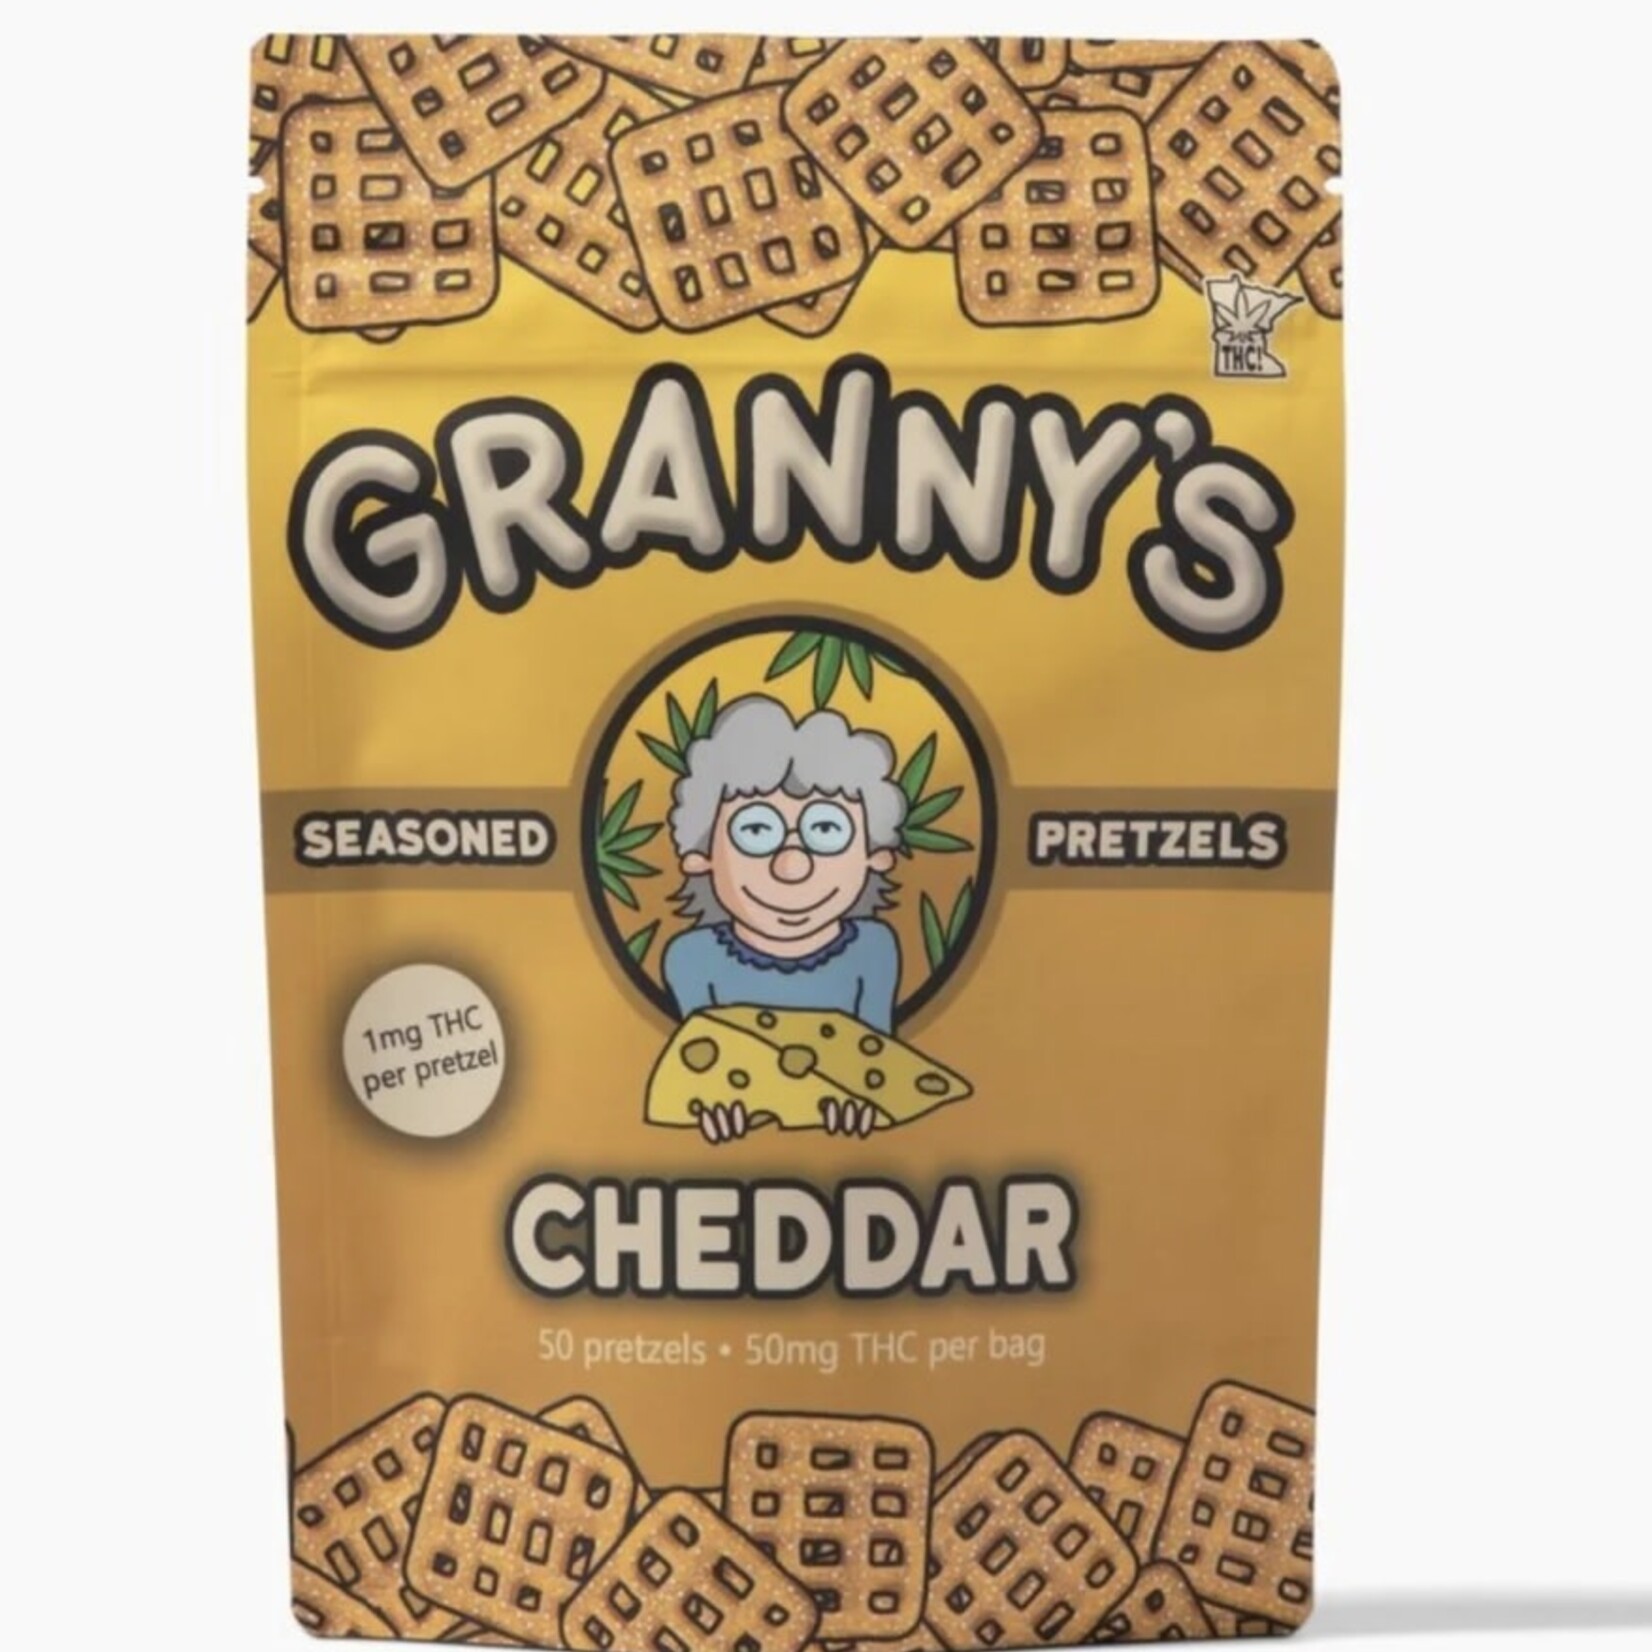 Grannys Grannys Cheddar Pretzels